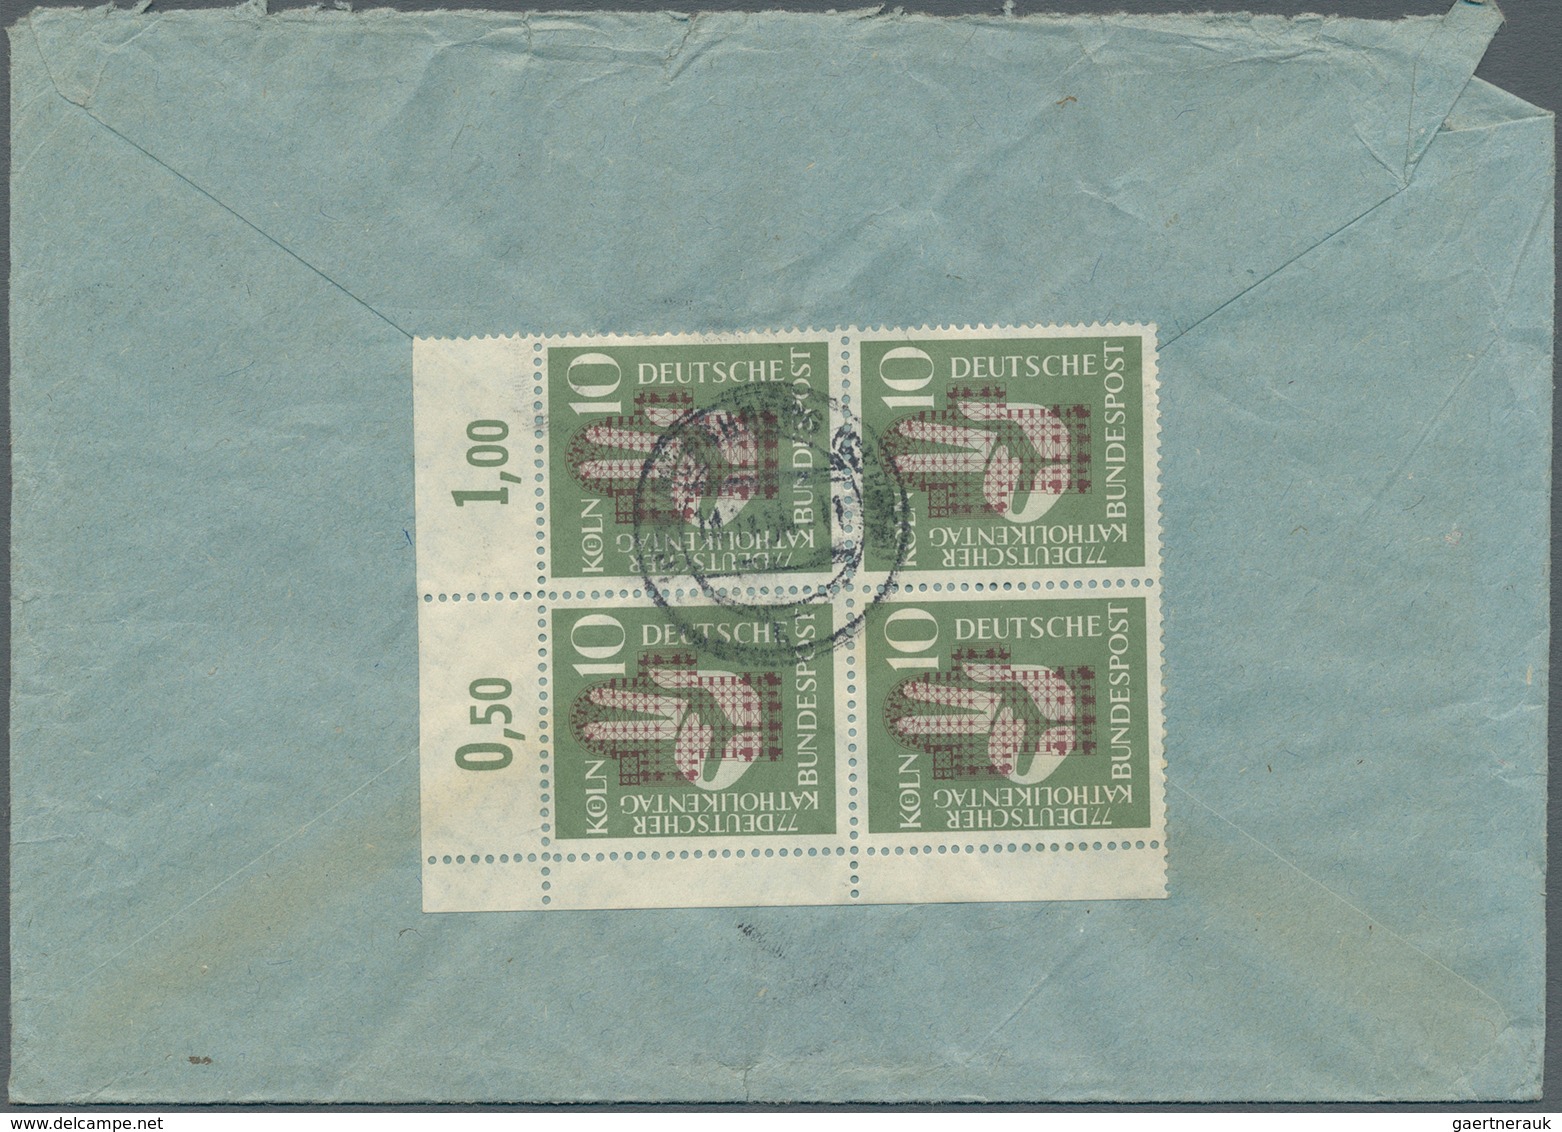 32745 Bundesrepublik Deutschland: 1953/1961, Partie von 61 Briefen/Karten mit Sondermarken-Einzel- und Meh